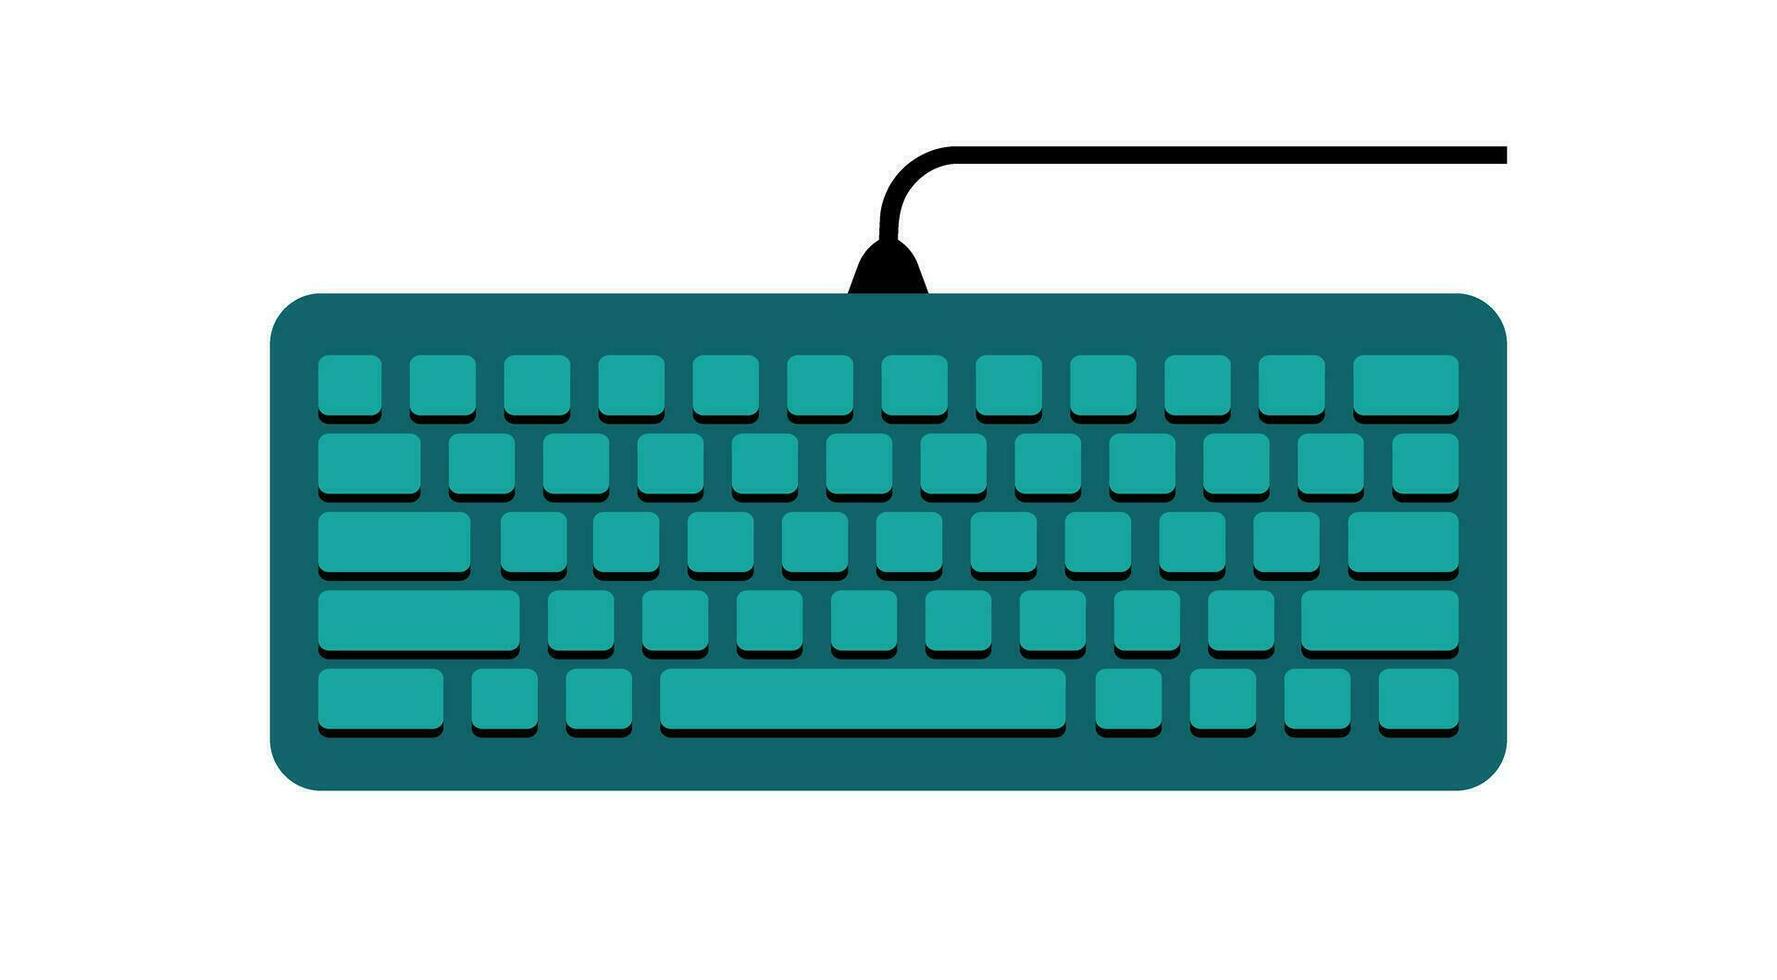 tastiera computer attrezzatura cartone animato stile vettore illustrazione